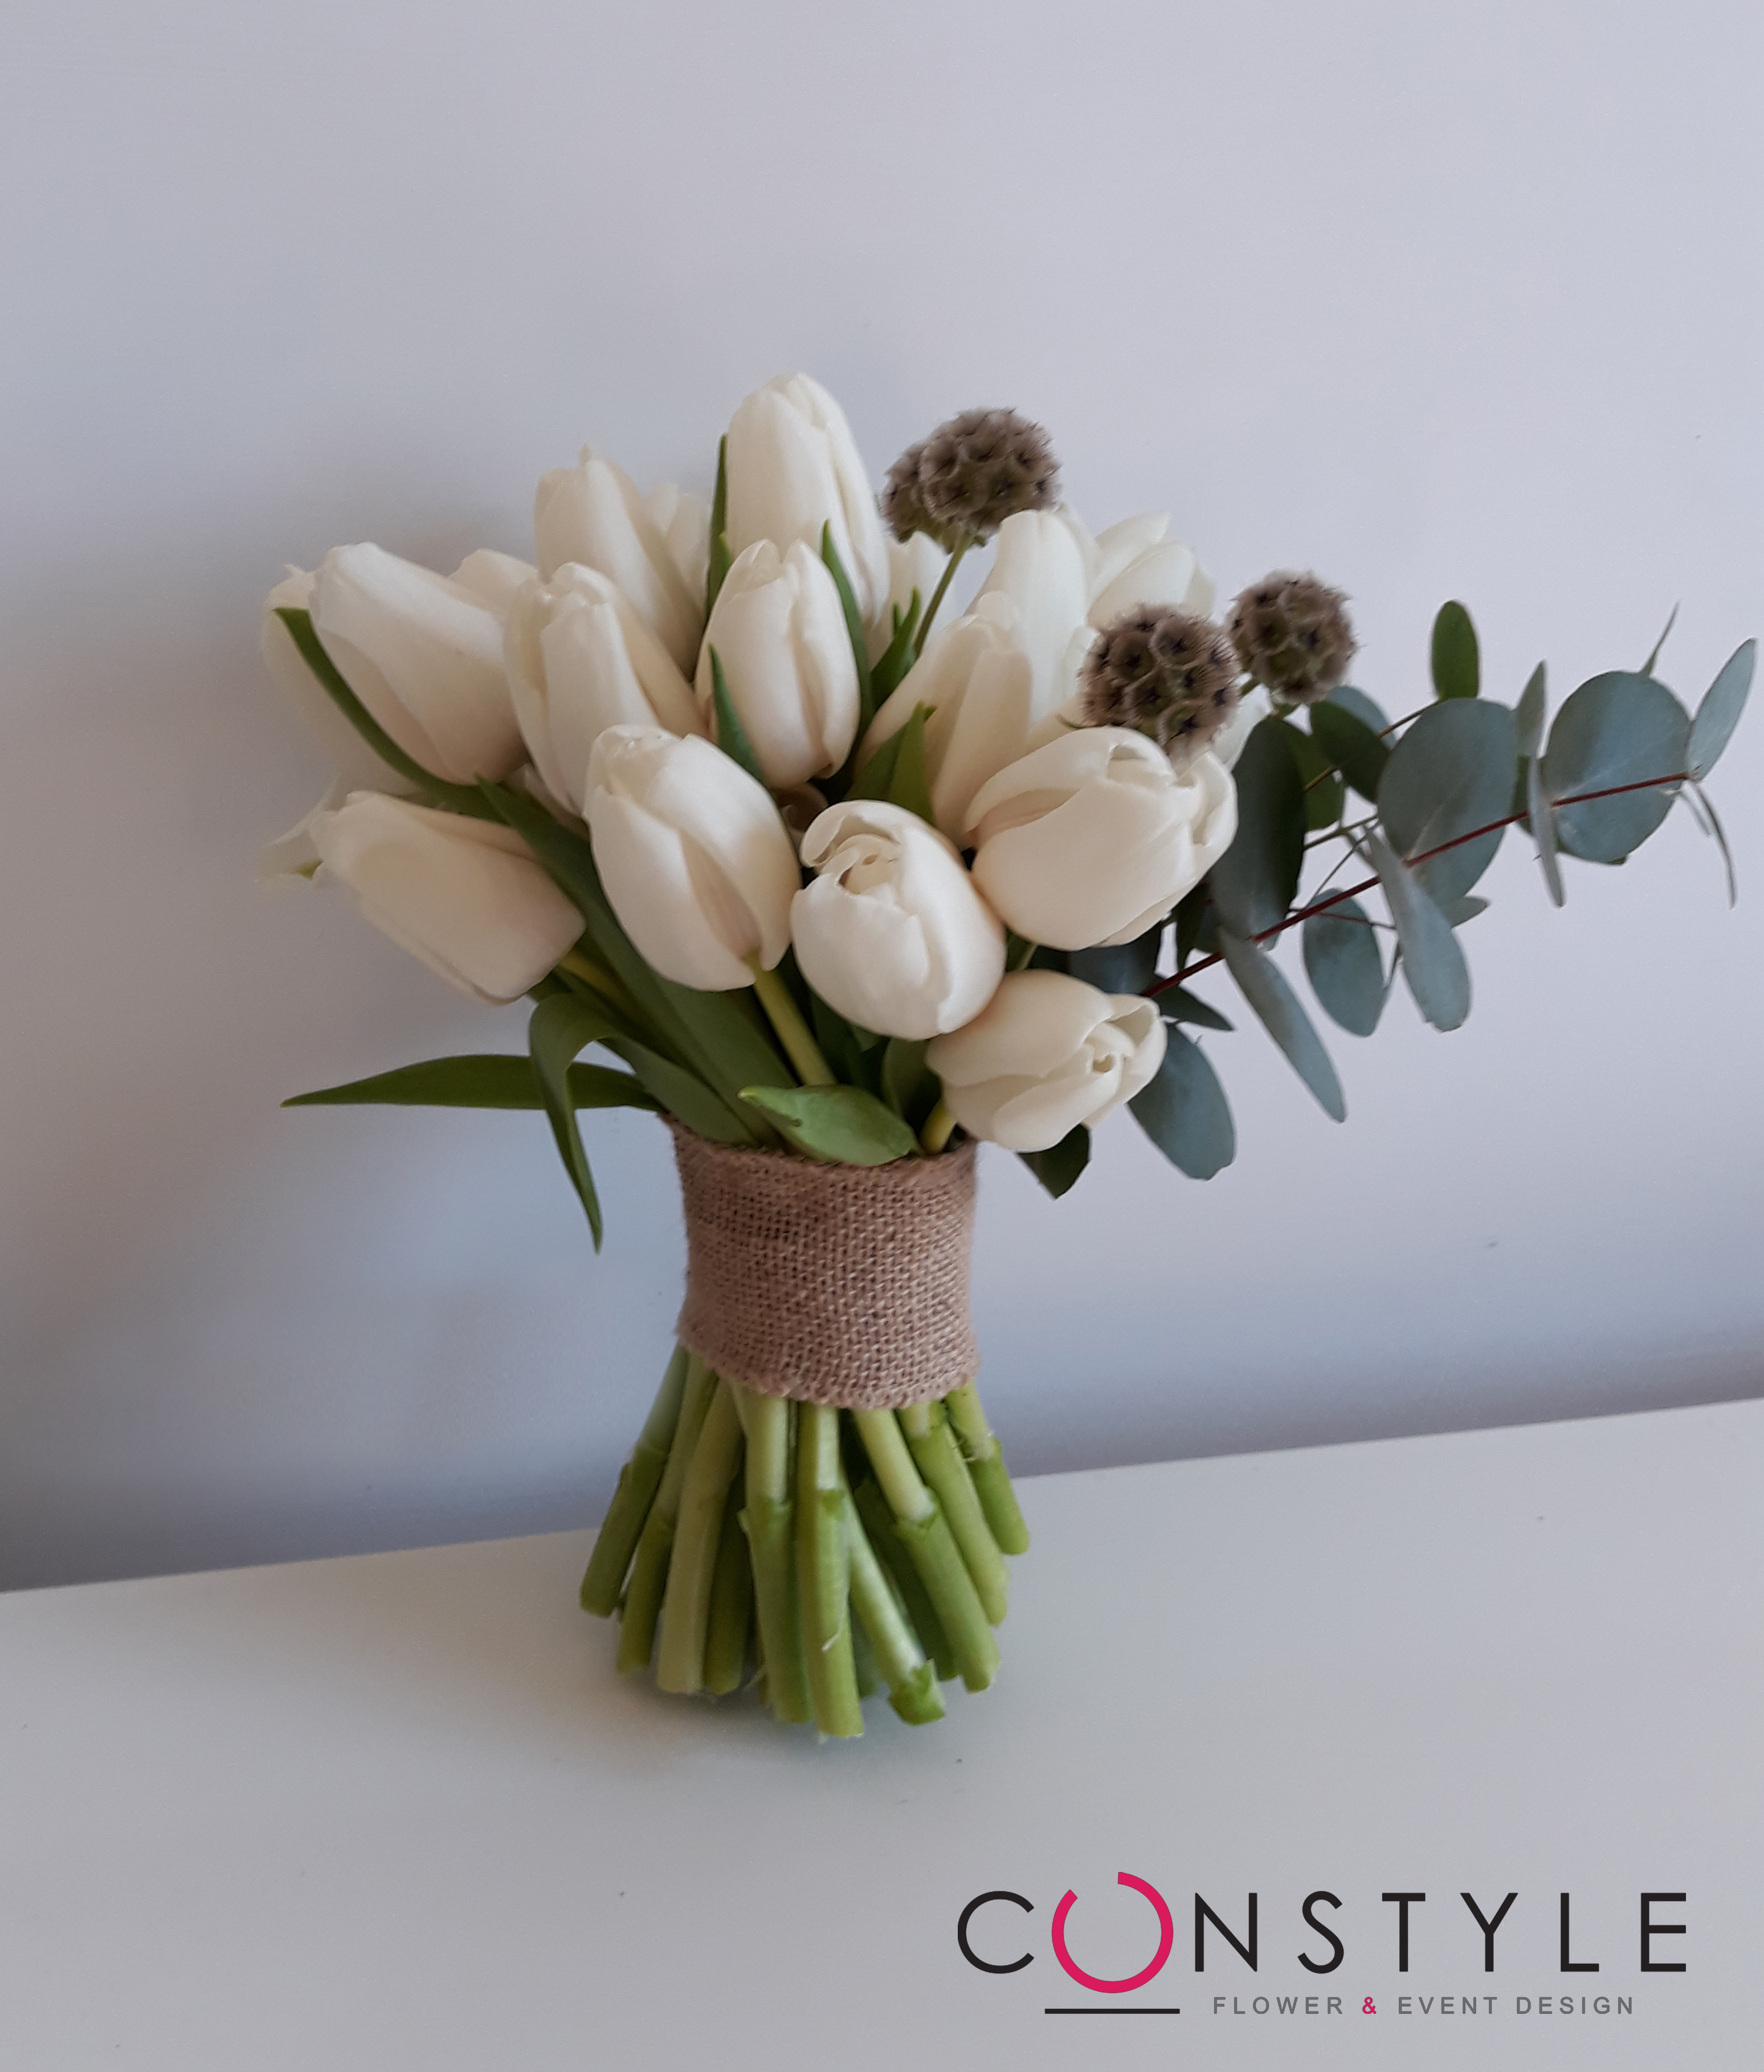 Constyle Wedding & Flower: i fiori ci rendono migliori, piu felici e piu utili agli altri. 